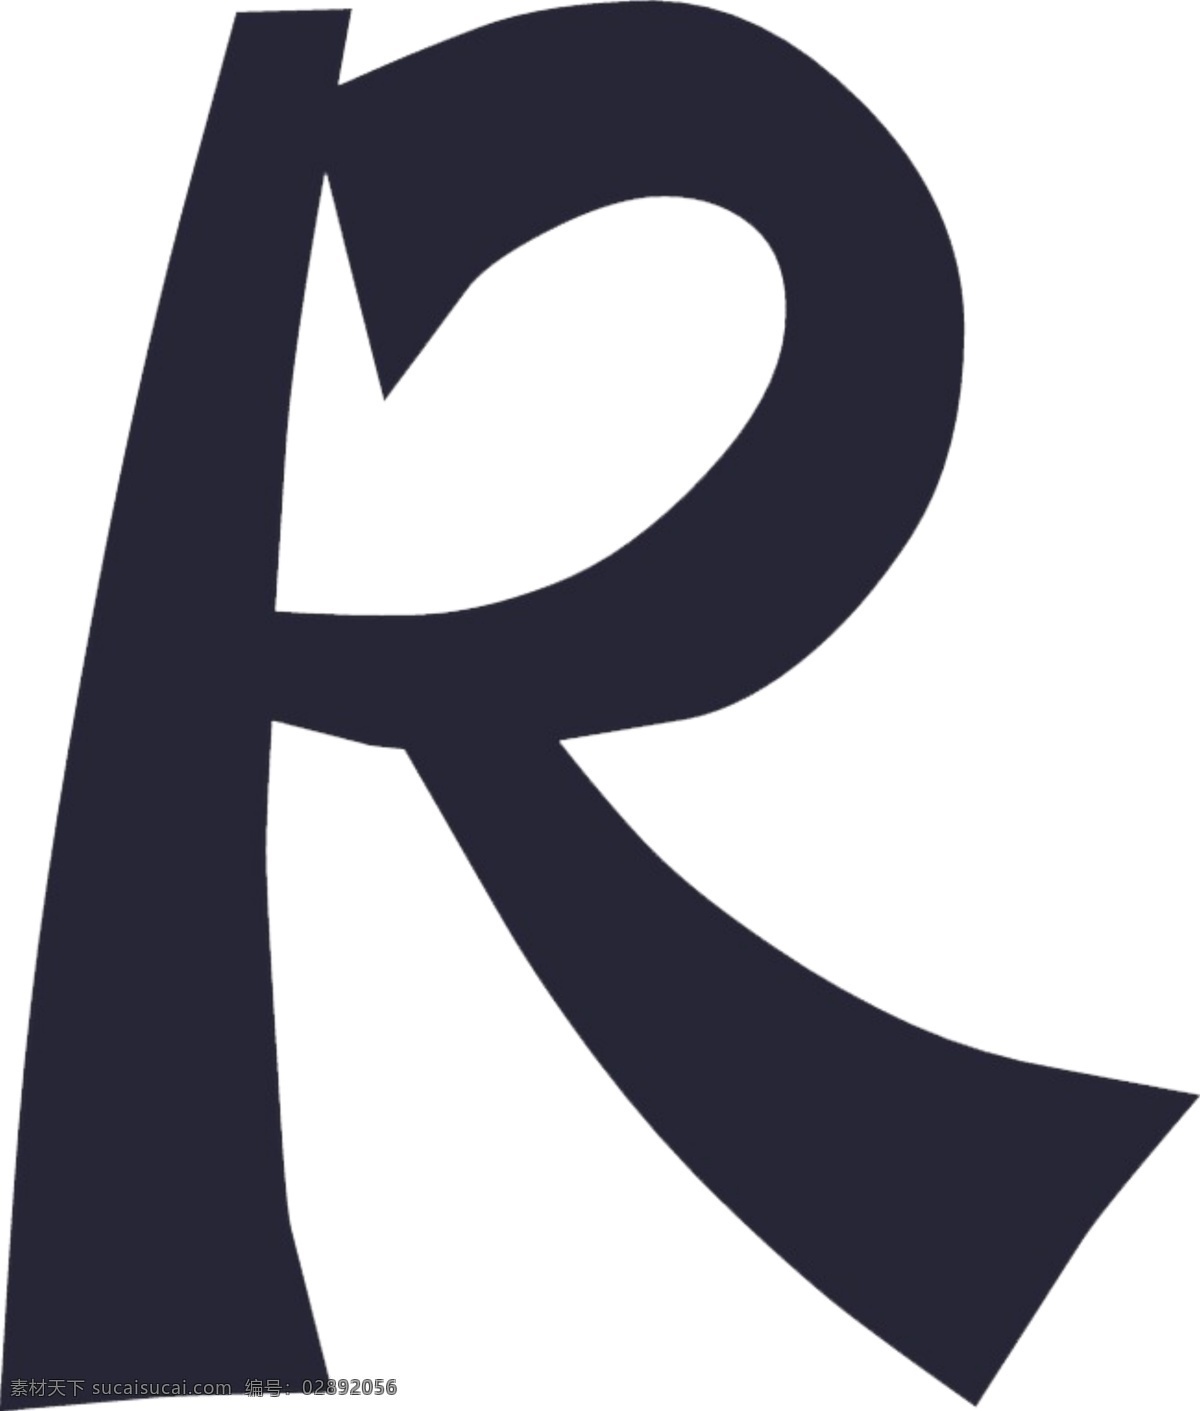 单色 商标 r 字母 创意 元素 装饰 图案 集合 商标r 商标r素材 商标r元素 商标r装饰 创意商标 英文字母r 黑色 字母设计